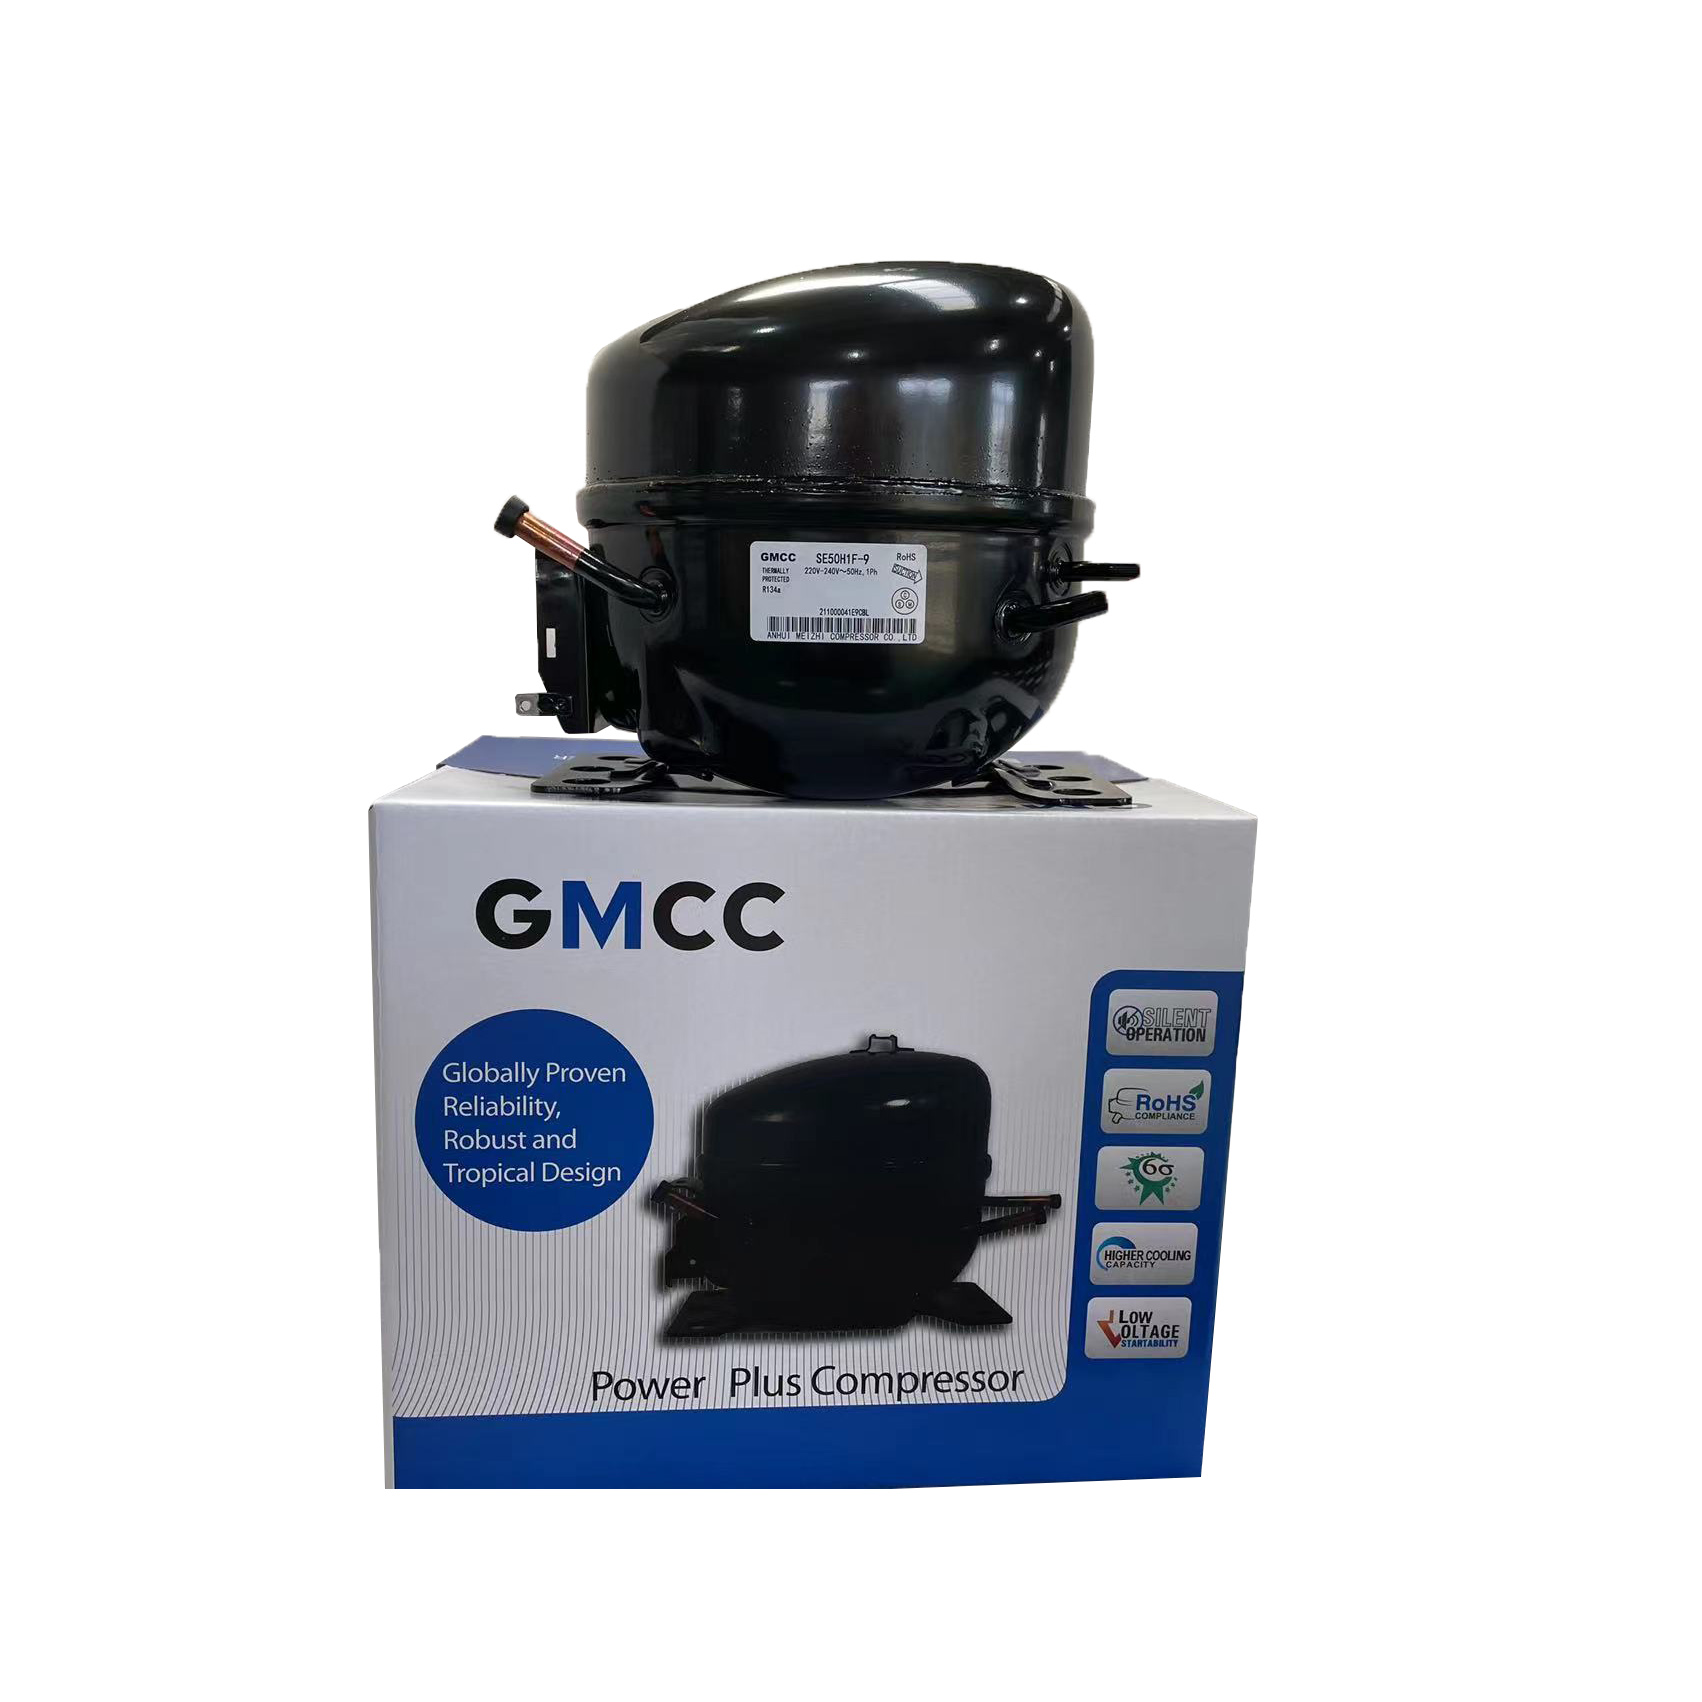 GMCC SE50H1F-9 freezer compressor